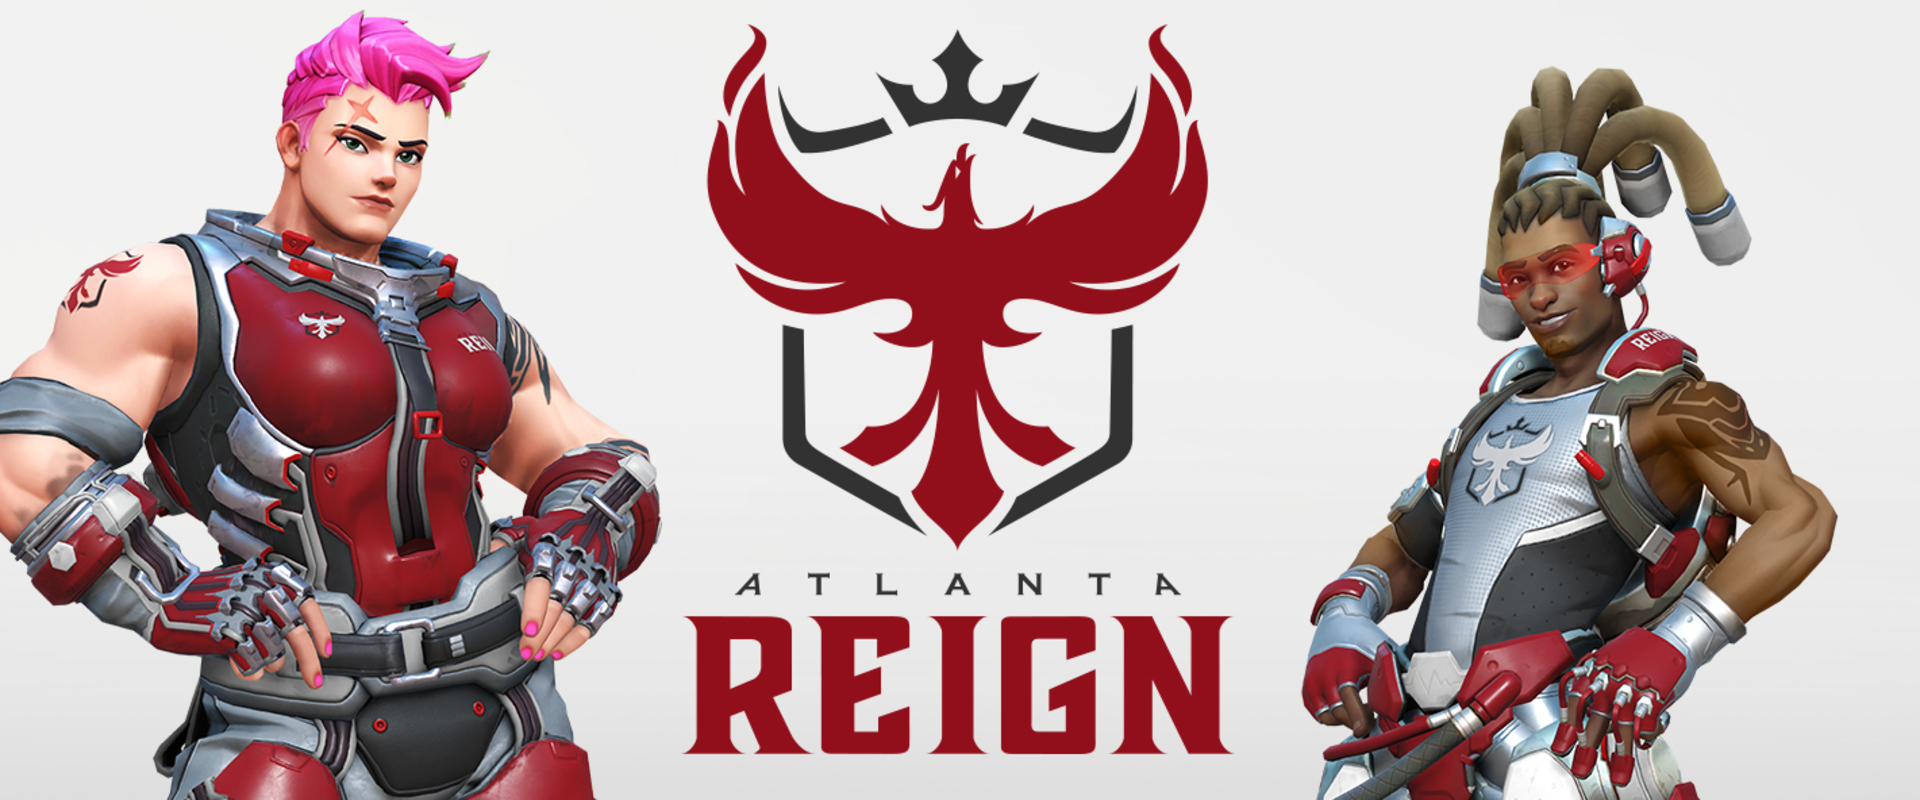 Az Atlanta Reign leleplezte játékoskeretét - dafran is a csapatban!